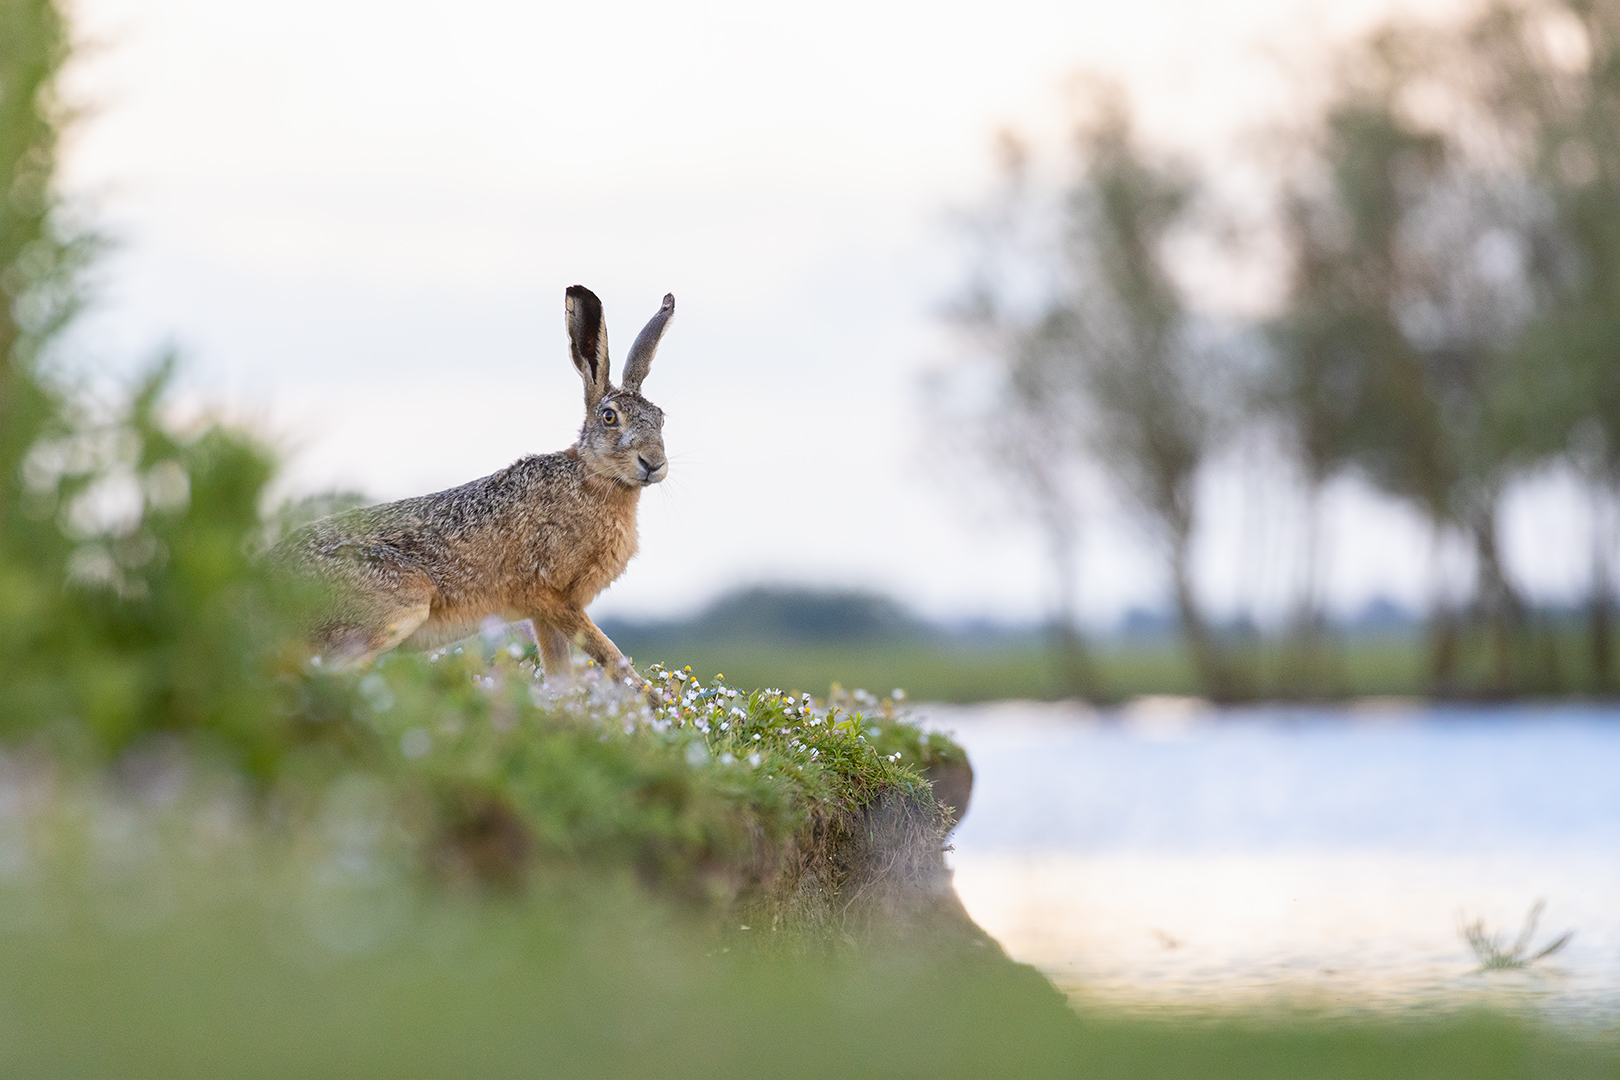 Dream hare